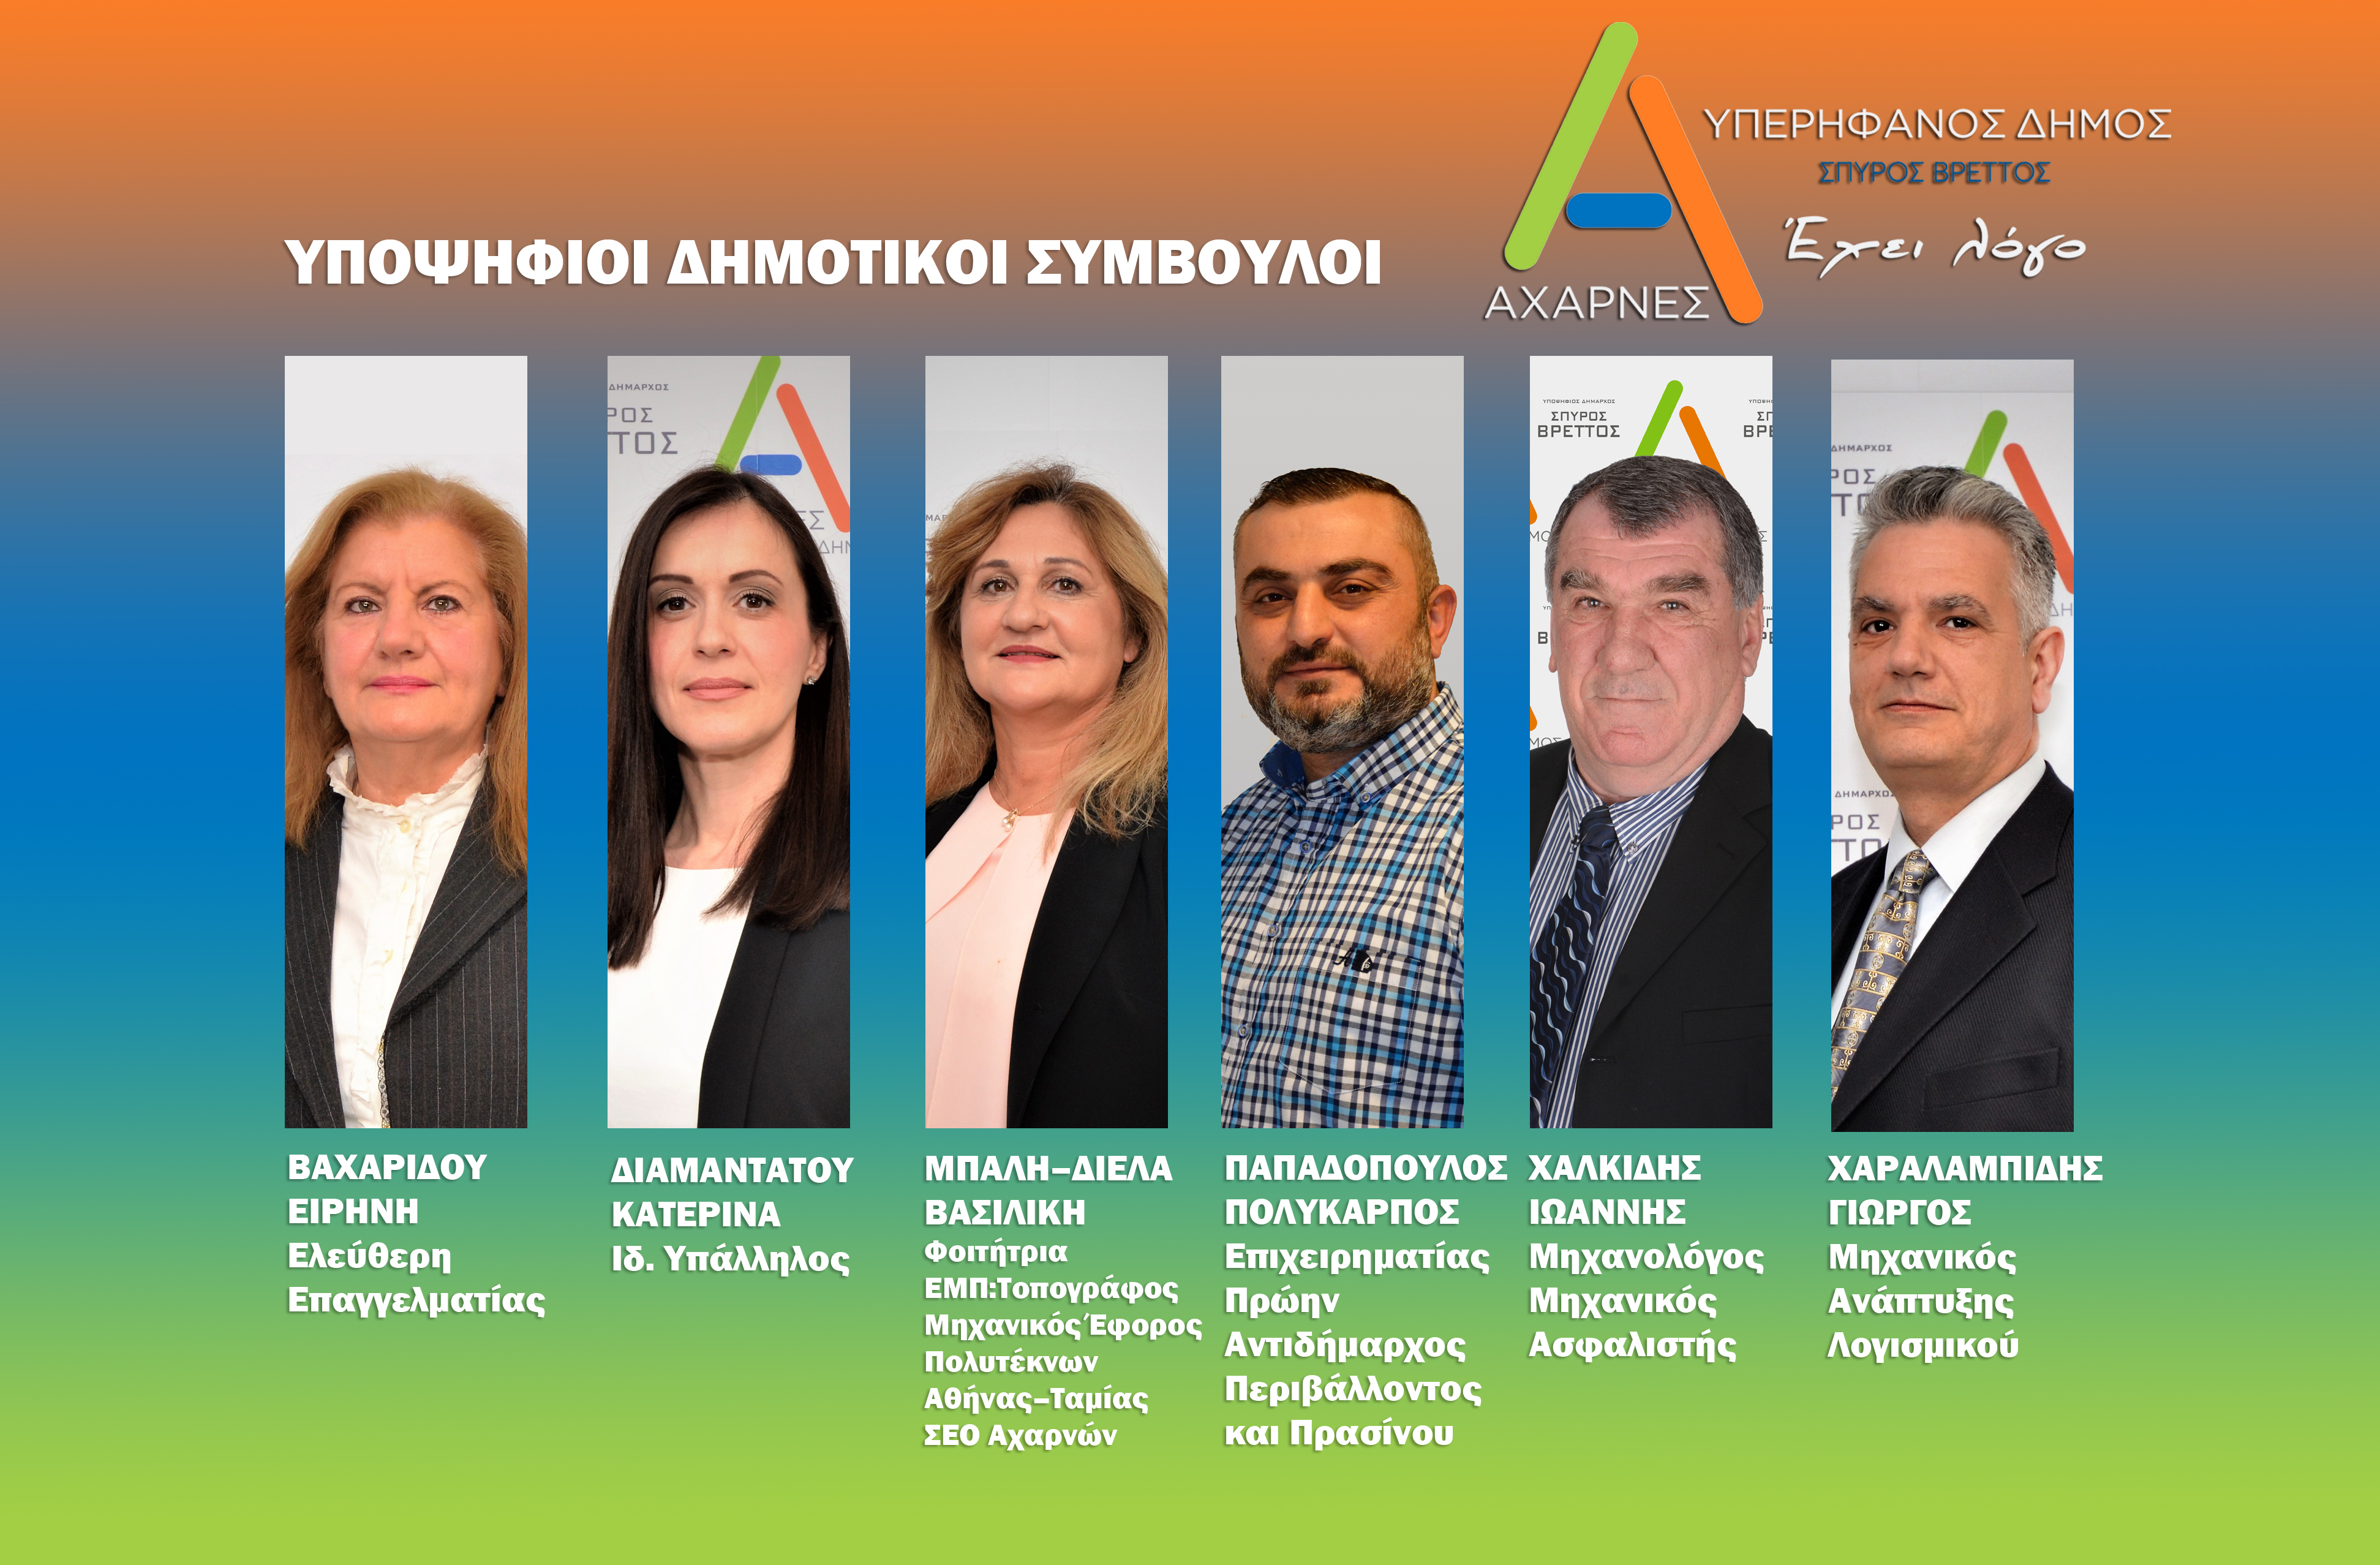 Έξι νέες υποψηφιότητες από το Συνδυασμό “Αχαρνές Υπερήφανος Δήμος” με επικεφαλής τον Σπύρο Βρεττό